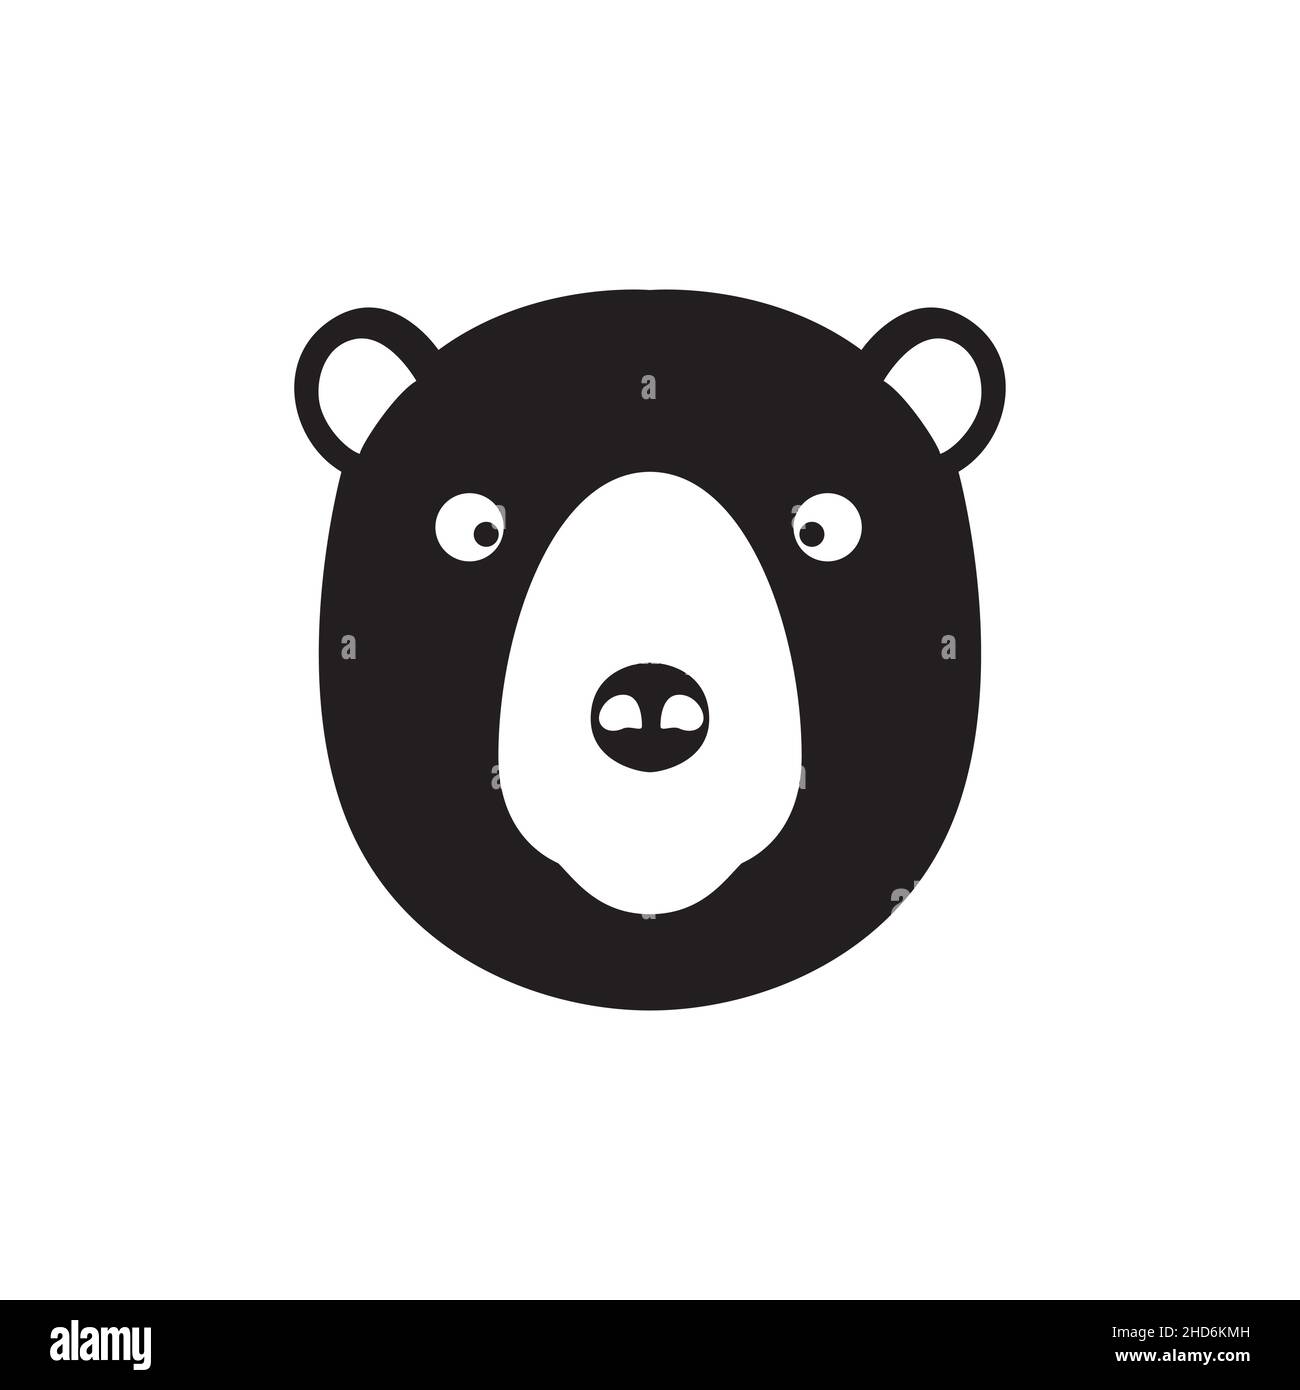 testa nera sorriso miele orso logo disegno vettore grafico simbolo icona  illustrazione idea creativa Immagine e Vettoriale - Alamy